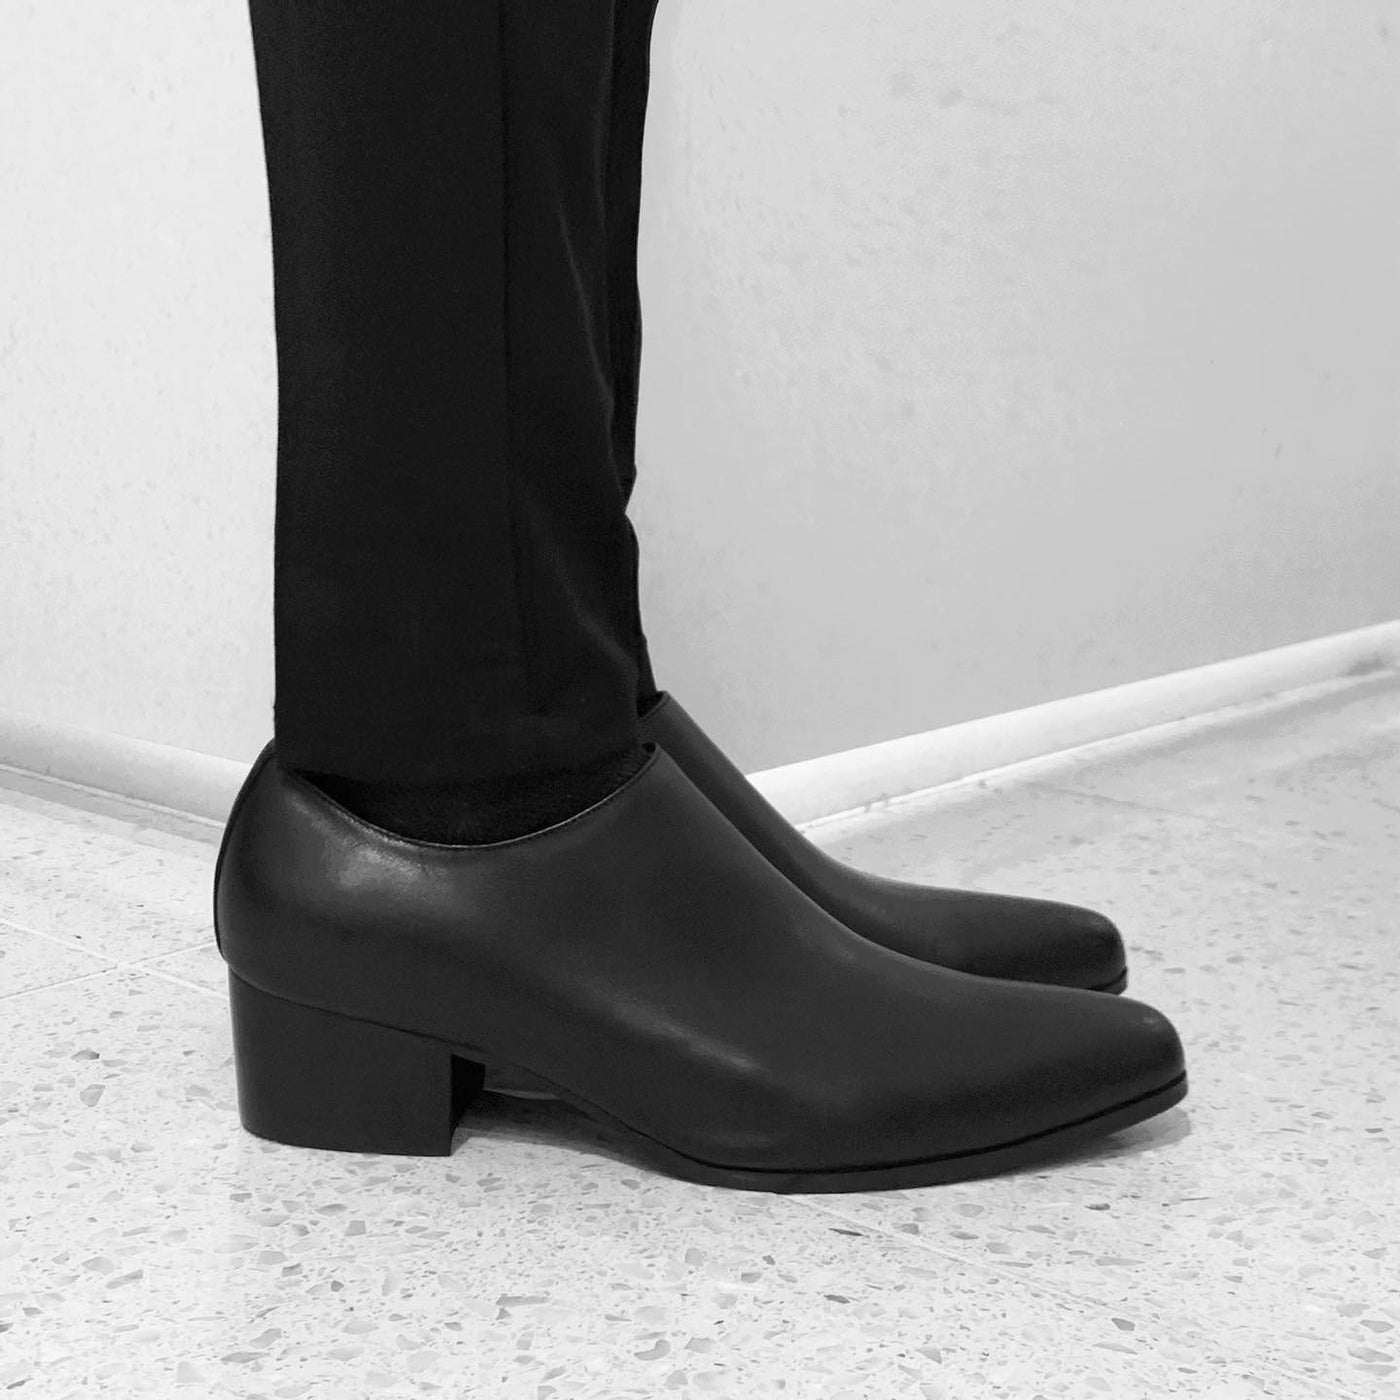 【즉납】Side-zip leather shoes "Basic"